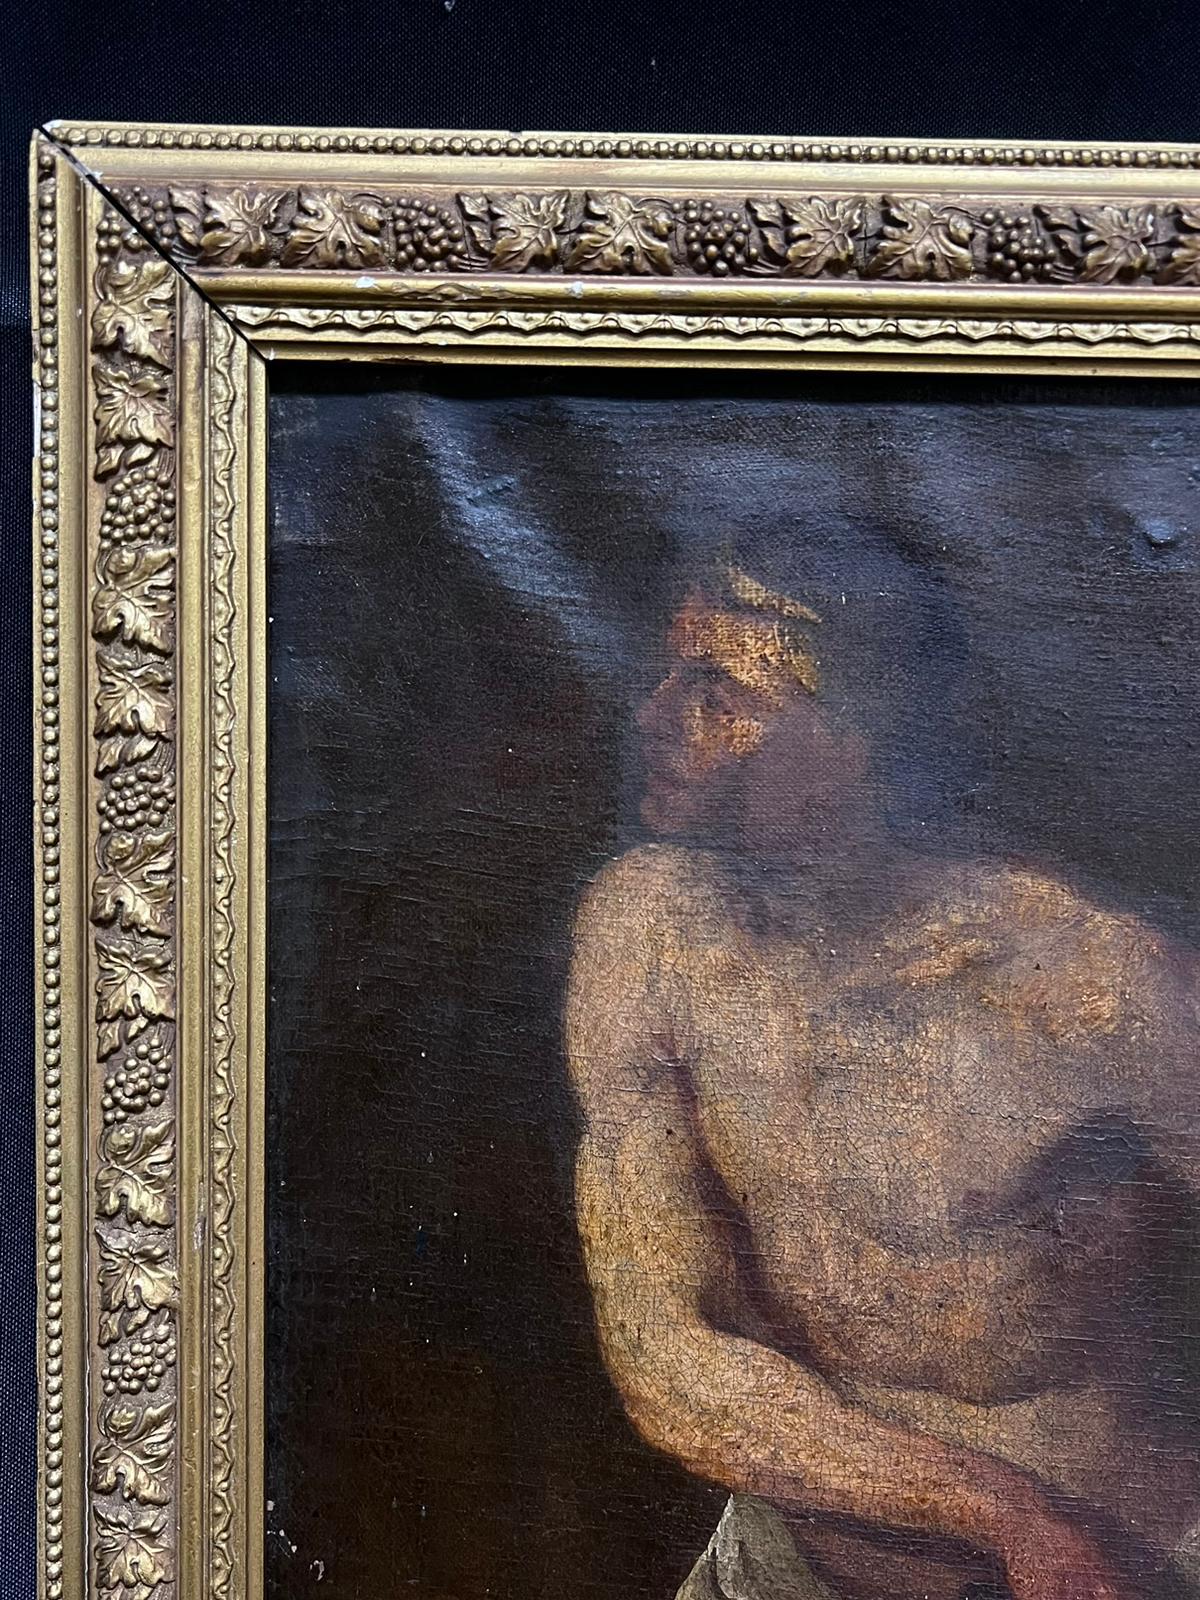 Halbnackter Mann zeichnet einen Dolch
Italienische Schule, frühes 17. Jahrhundert
Kreis von Caravaggio
Öl auf Leinwand, gerahmt
Gerahmt: 21 x 17 Zoll
Leinwand : 18 x 14 Zoll
Provenienz: Privatsammlung
Zustand: guter und gesunder Zustand für seine